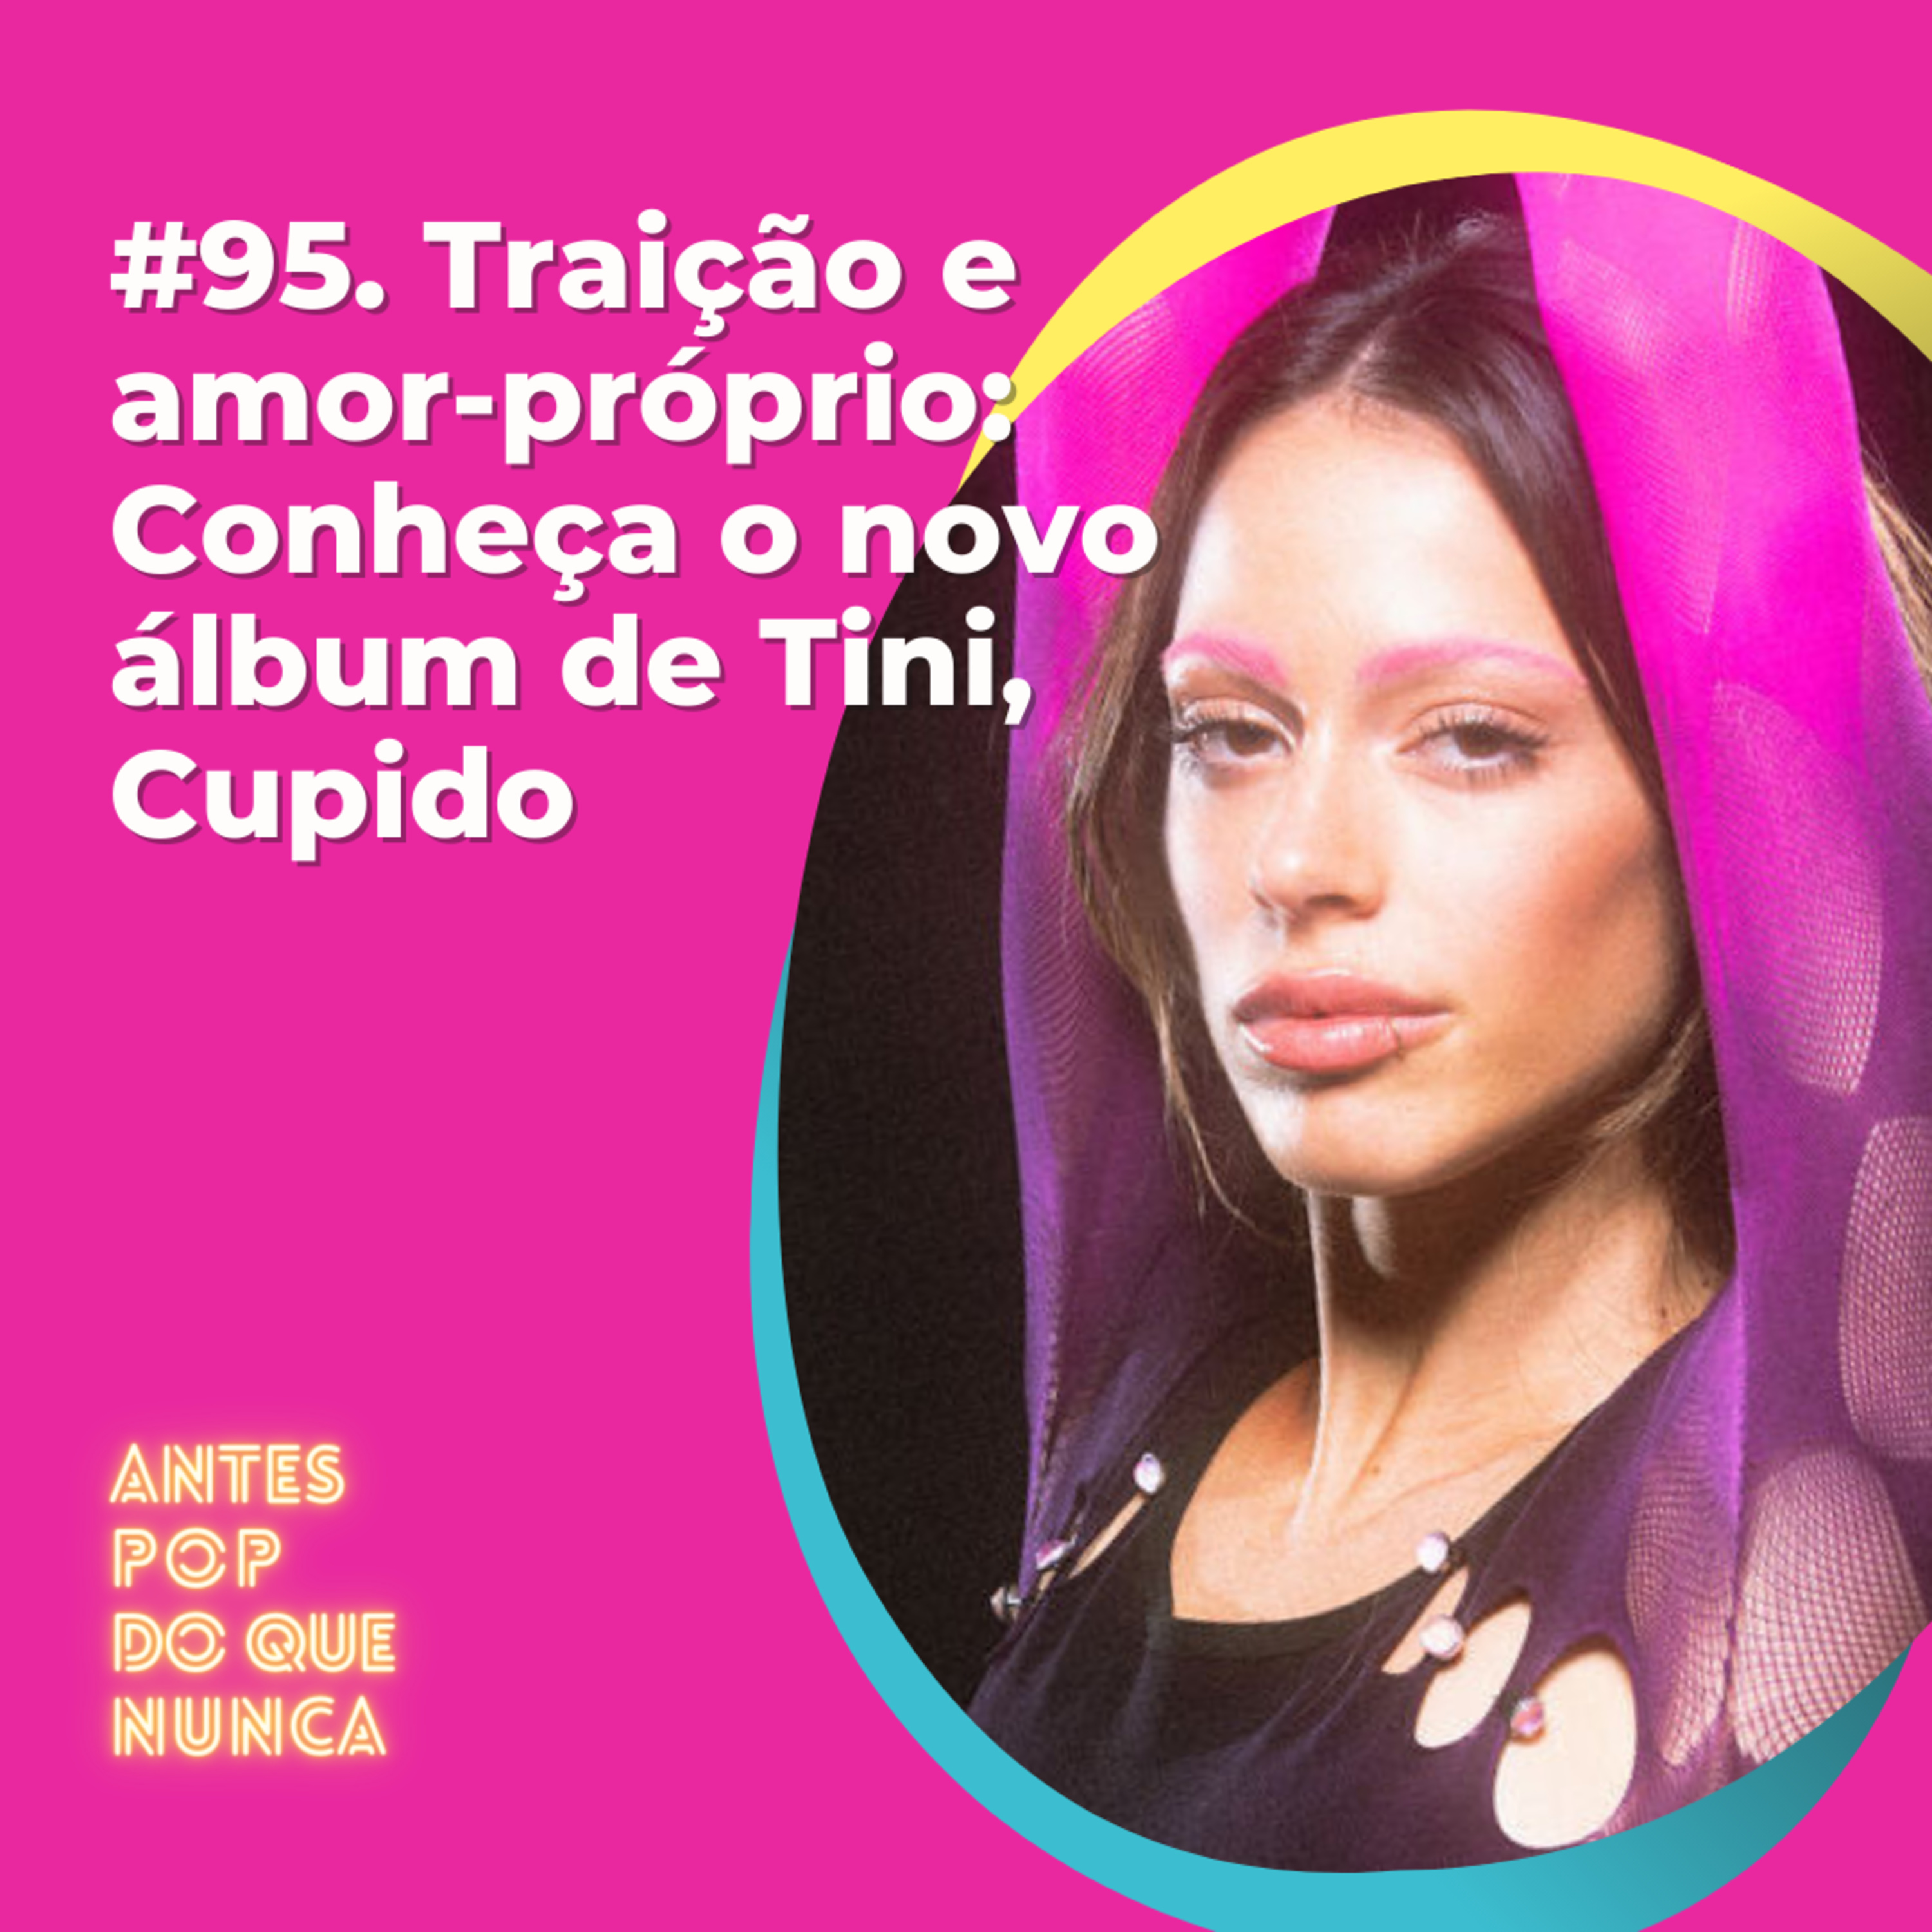 #95. Traição e amor-próprio: Conheça o novo álbum de Tini, Cupido